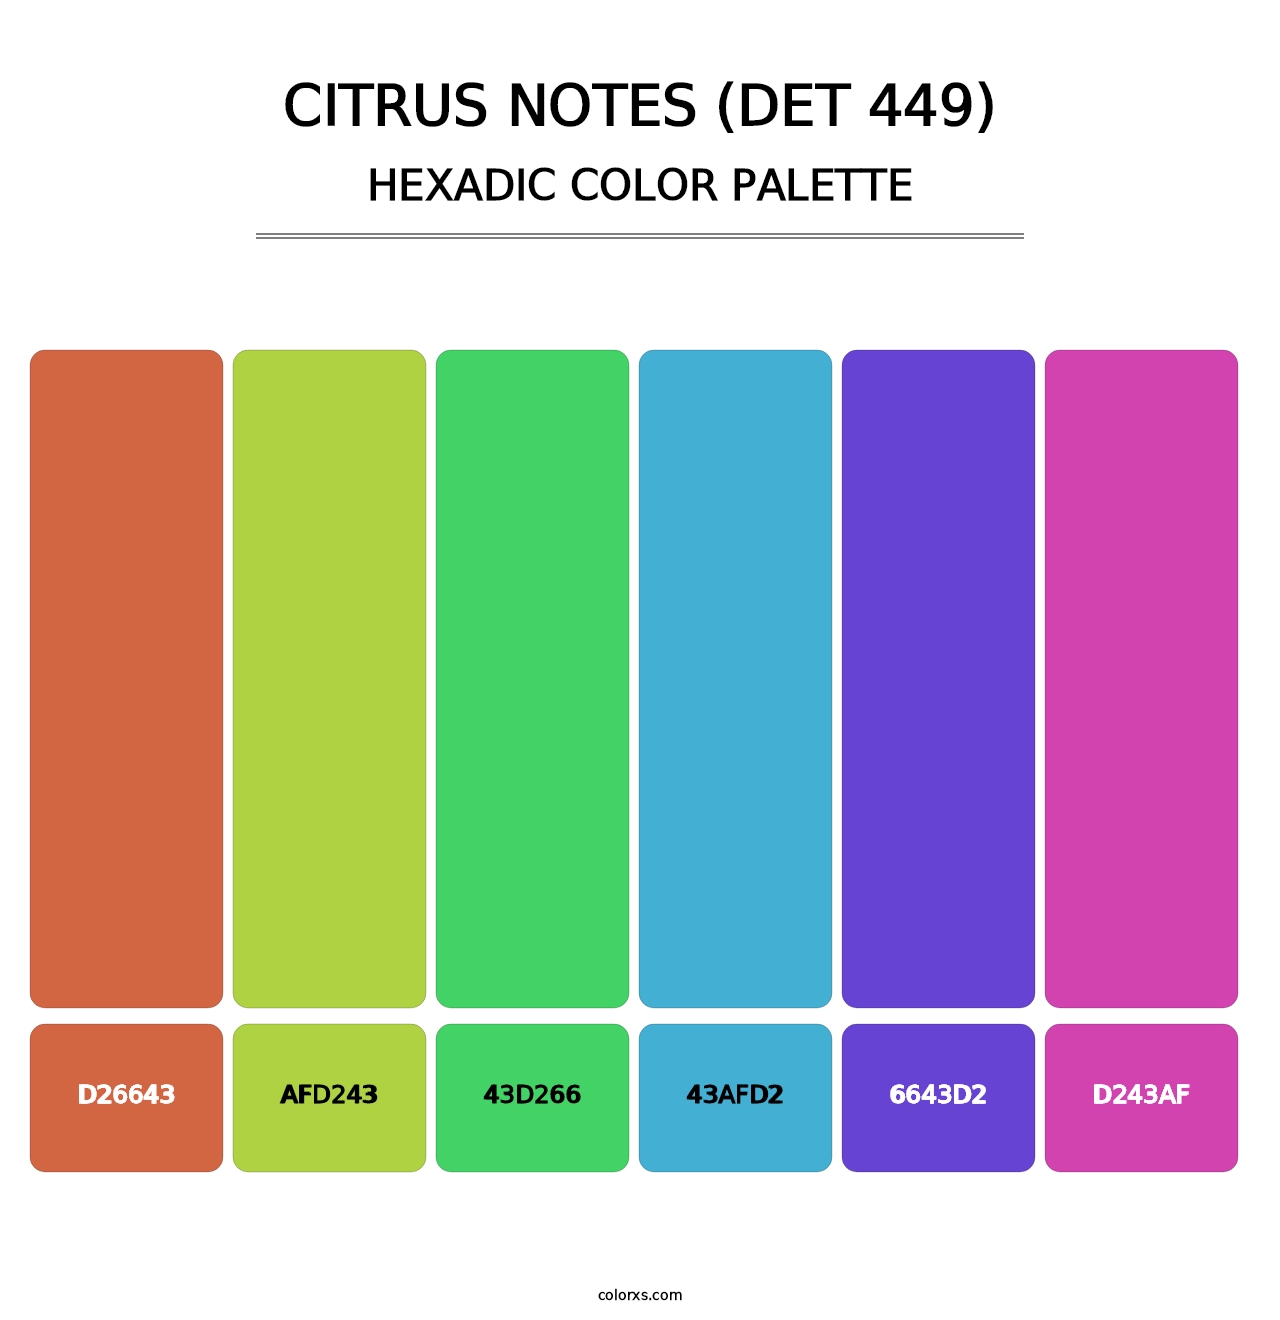 Citrus Notes (DET 449) - Hexadic Color Palette